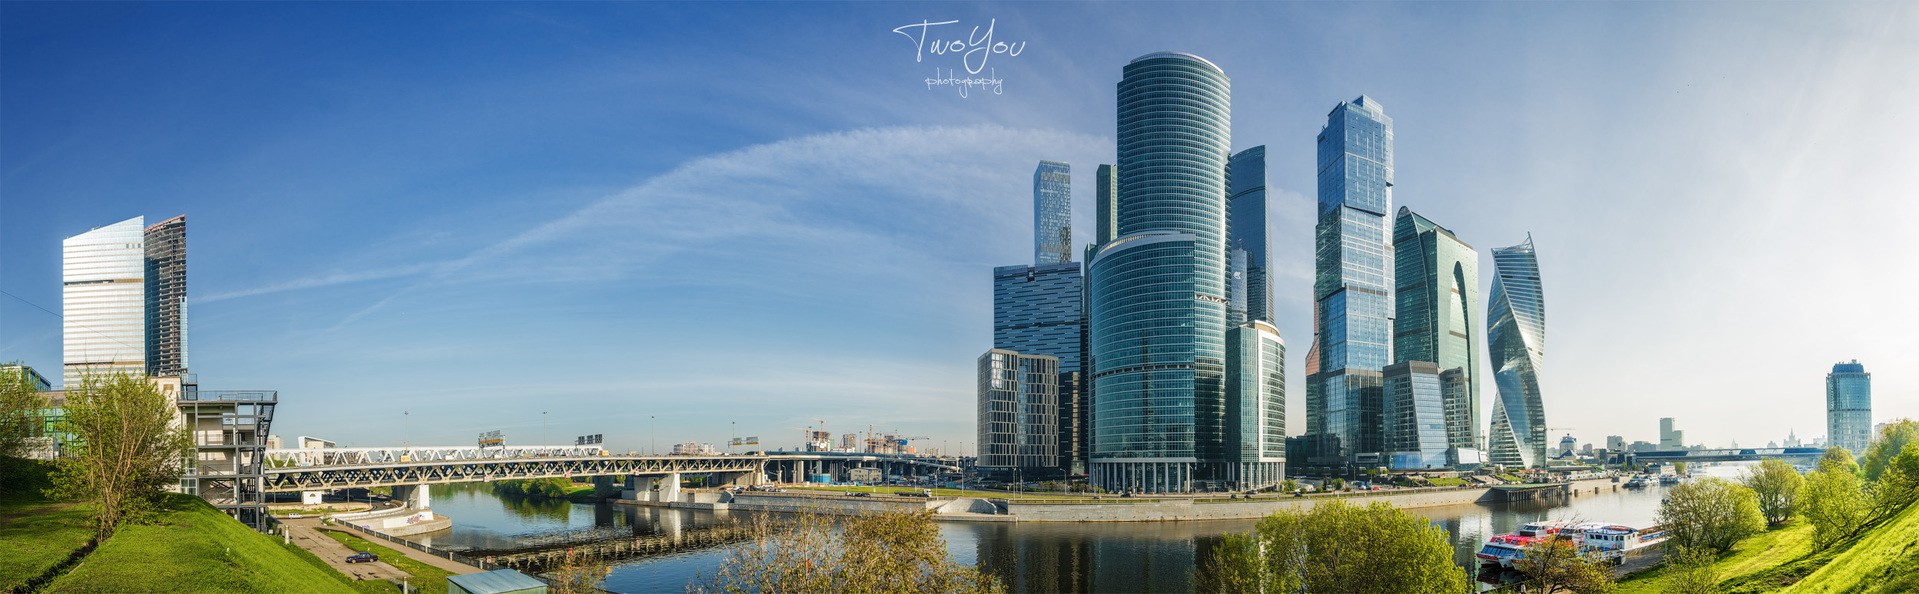 Панорама Москва-сити